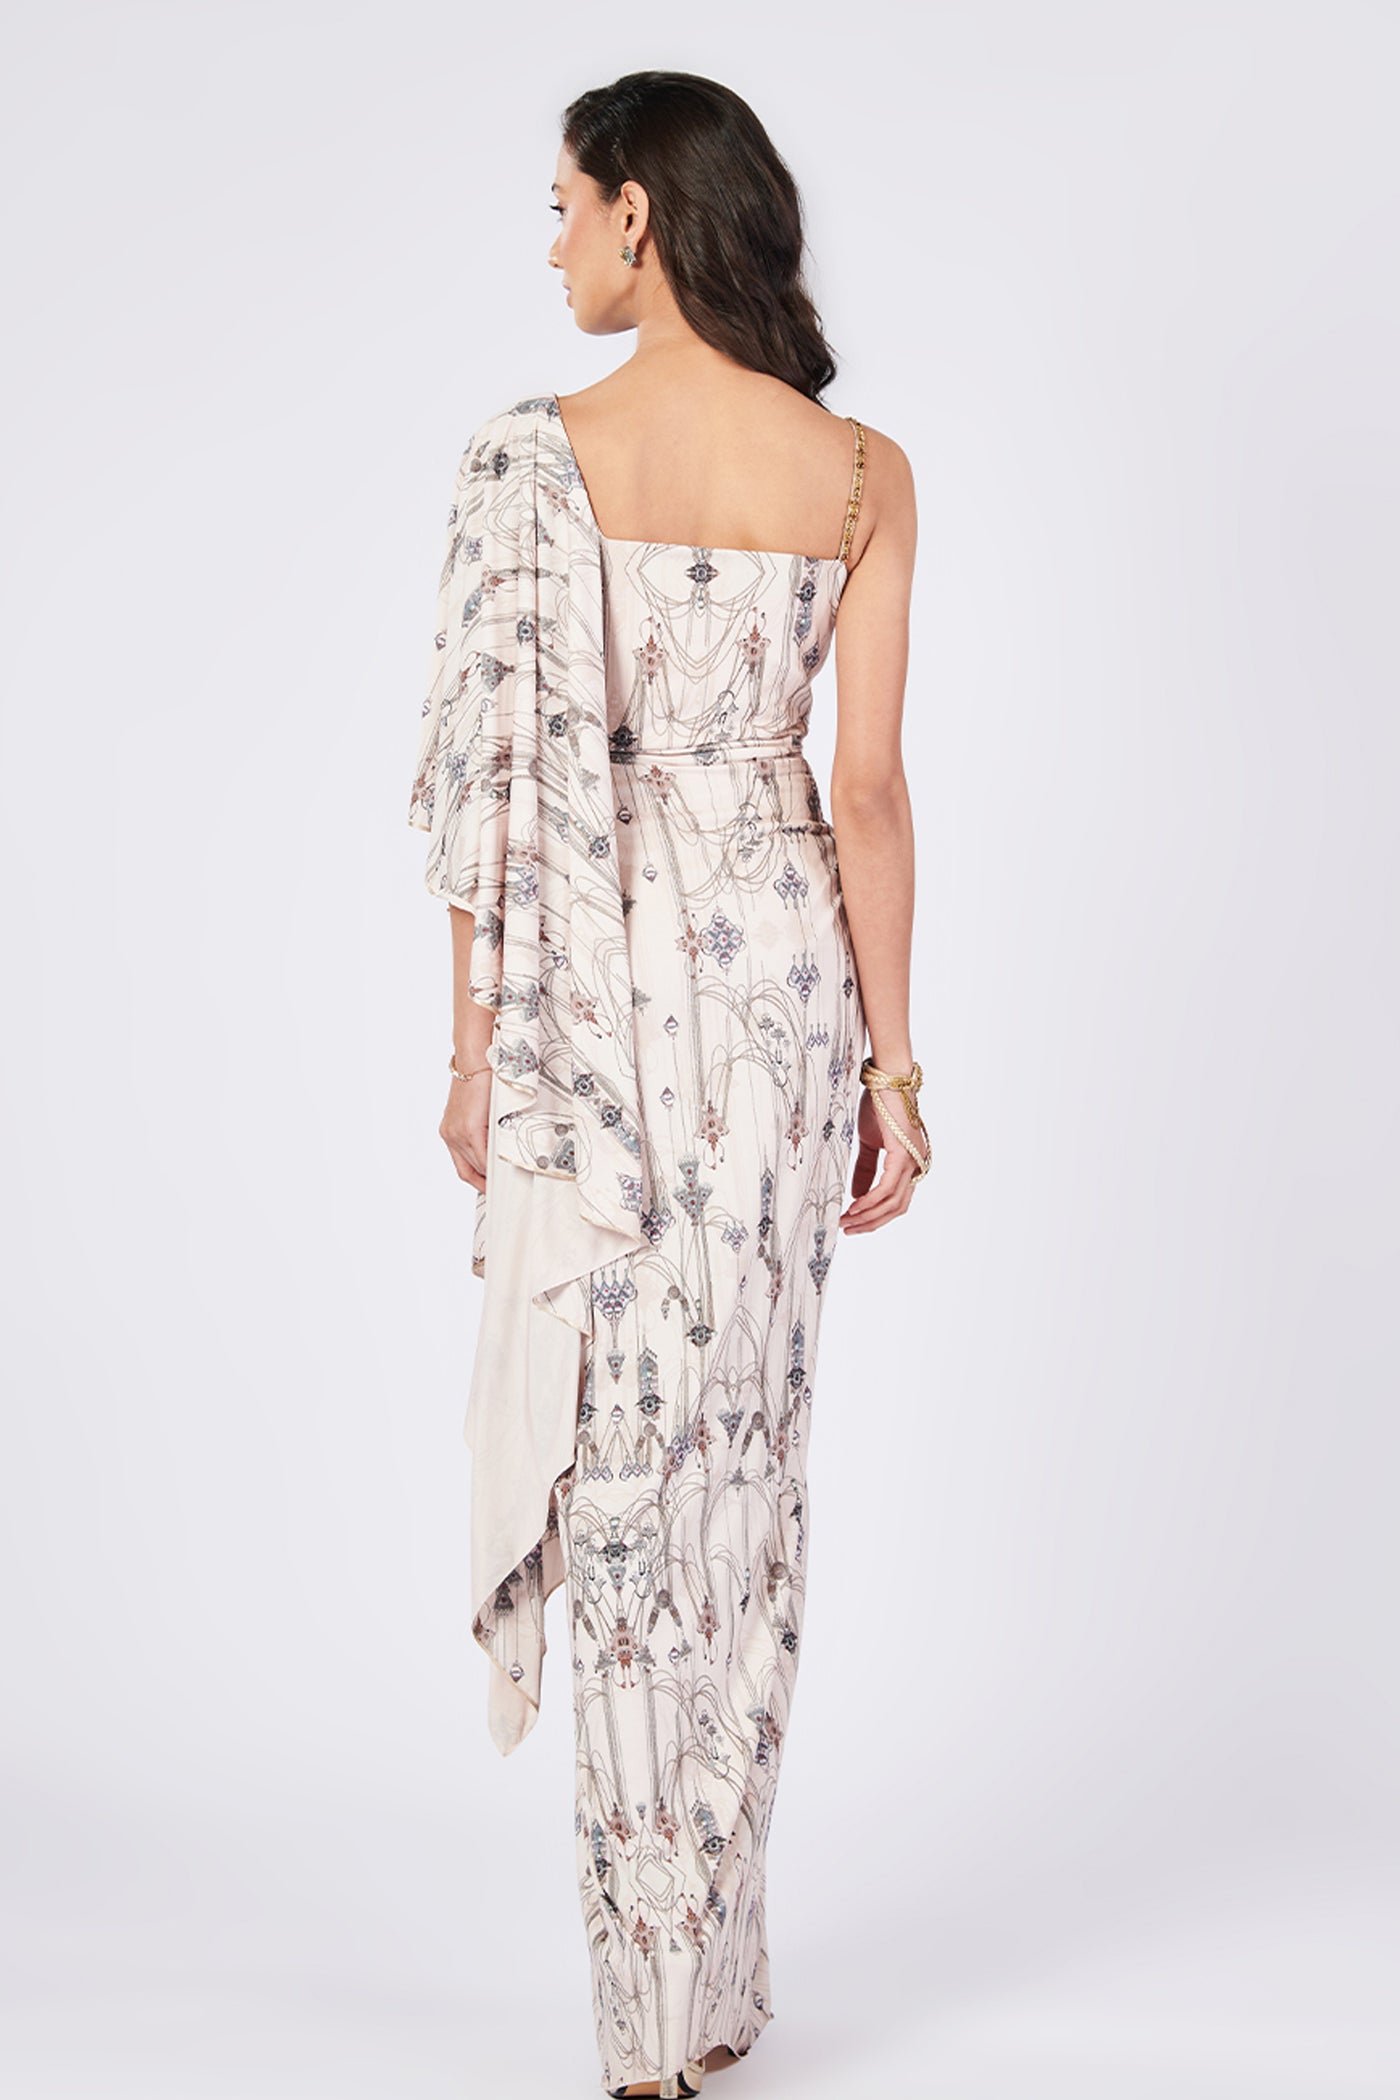 Shantanu & Nikhil Jewel Printed Drape Saree Gown indian designer wear online shopping melange singapore